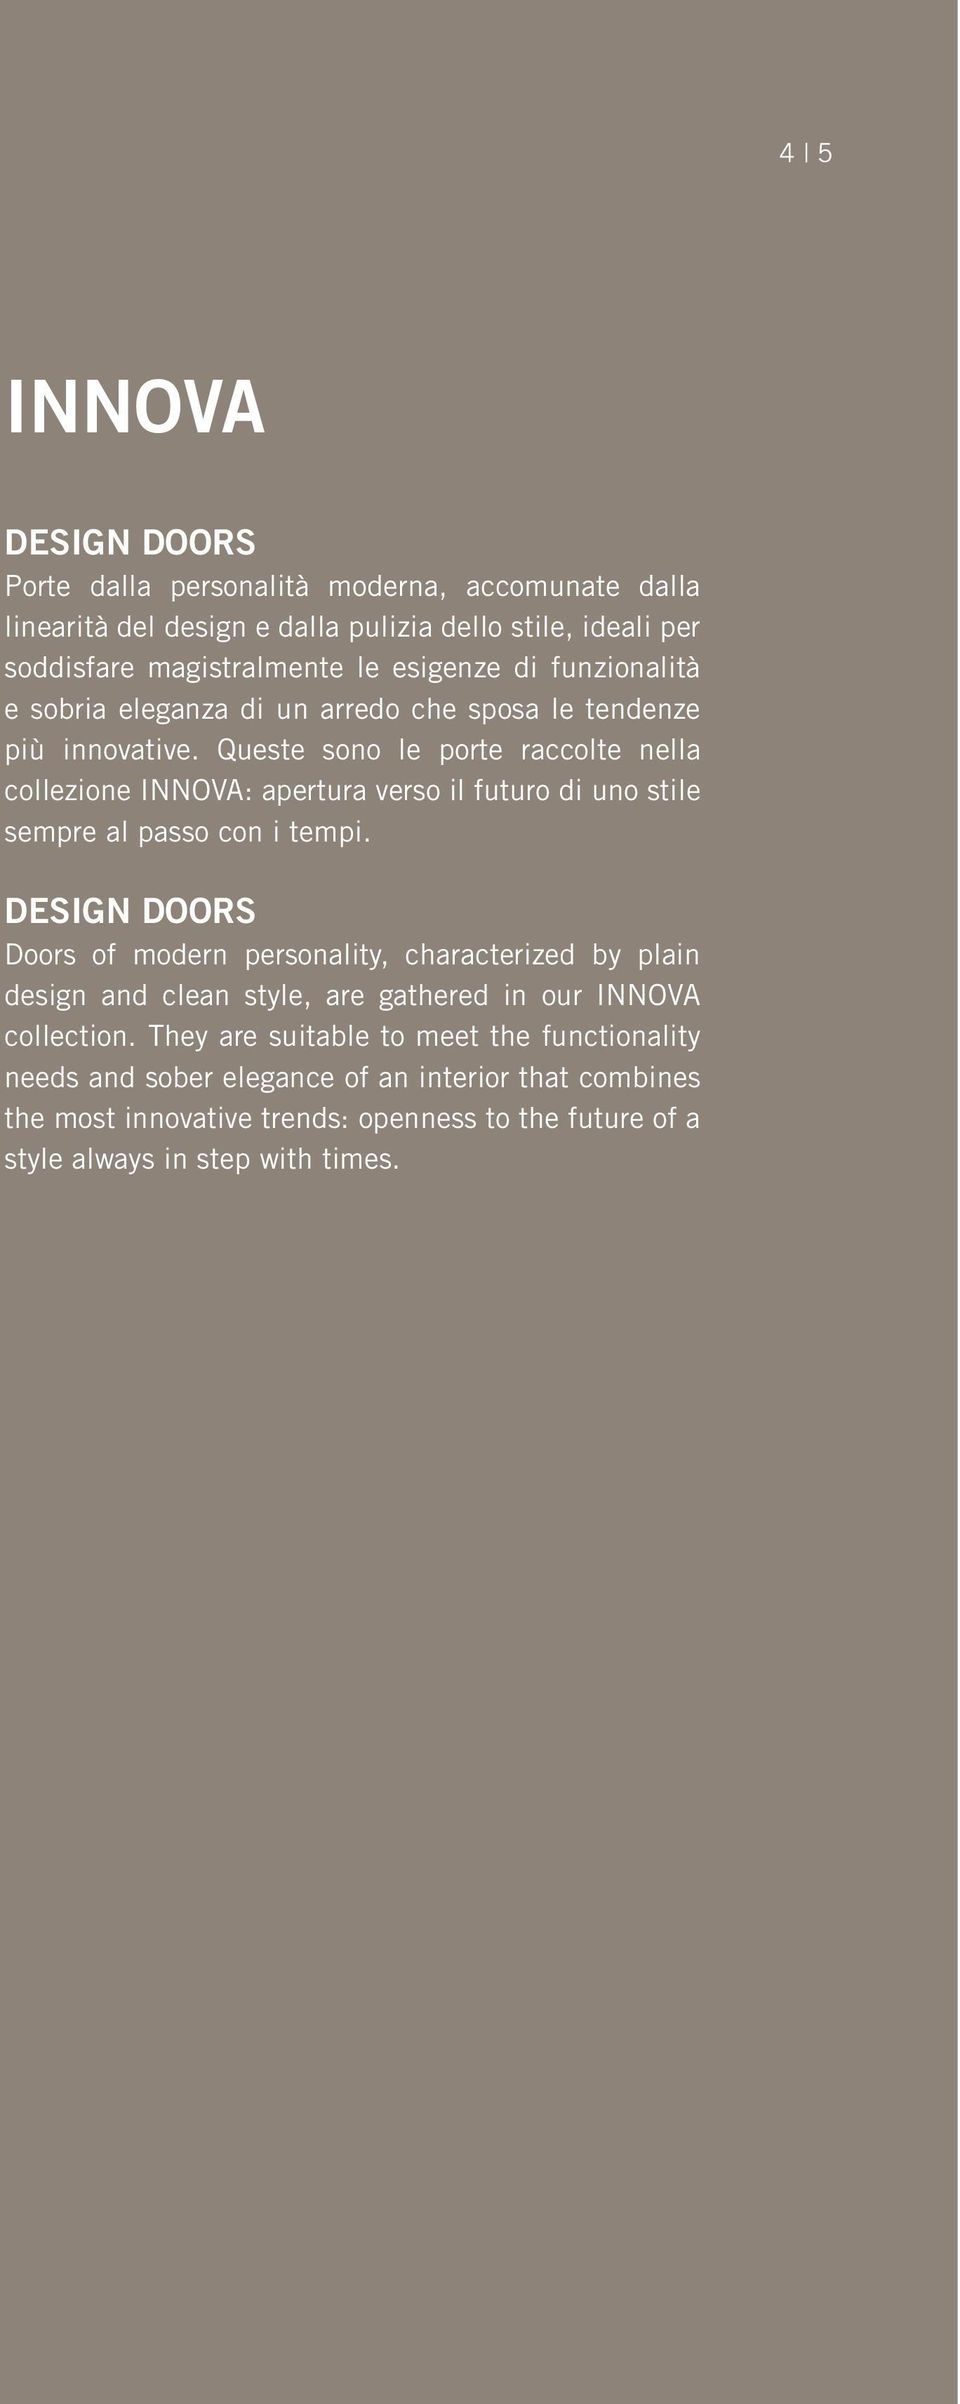 Queste sono le porte raccolte nella collezione INNOVA: apertura verso il futuro di uno stile sempre al passo con i tempi.